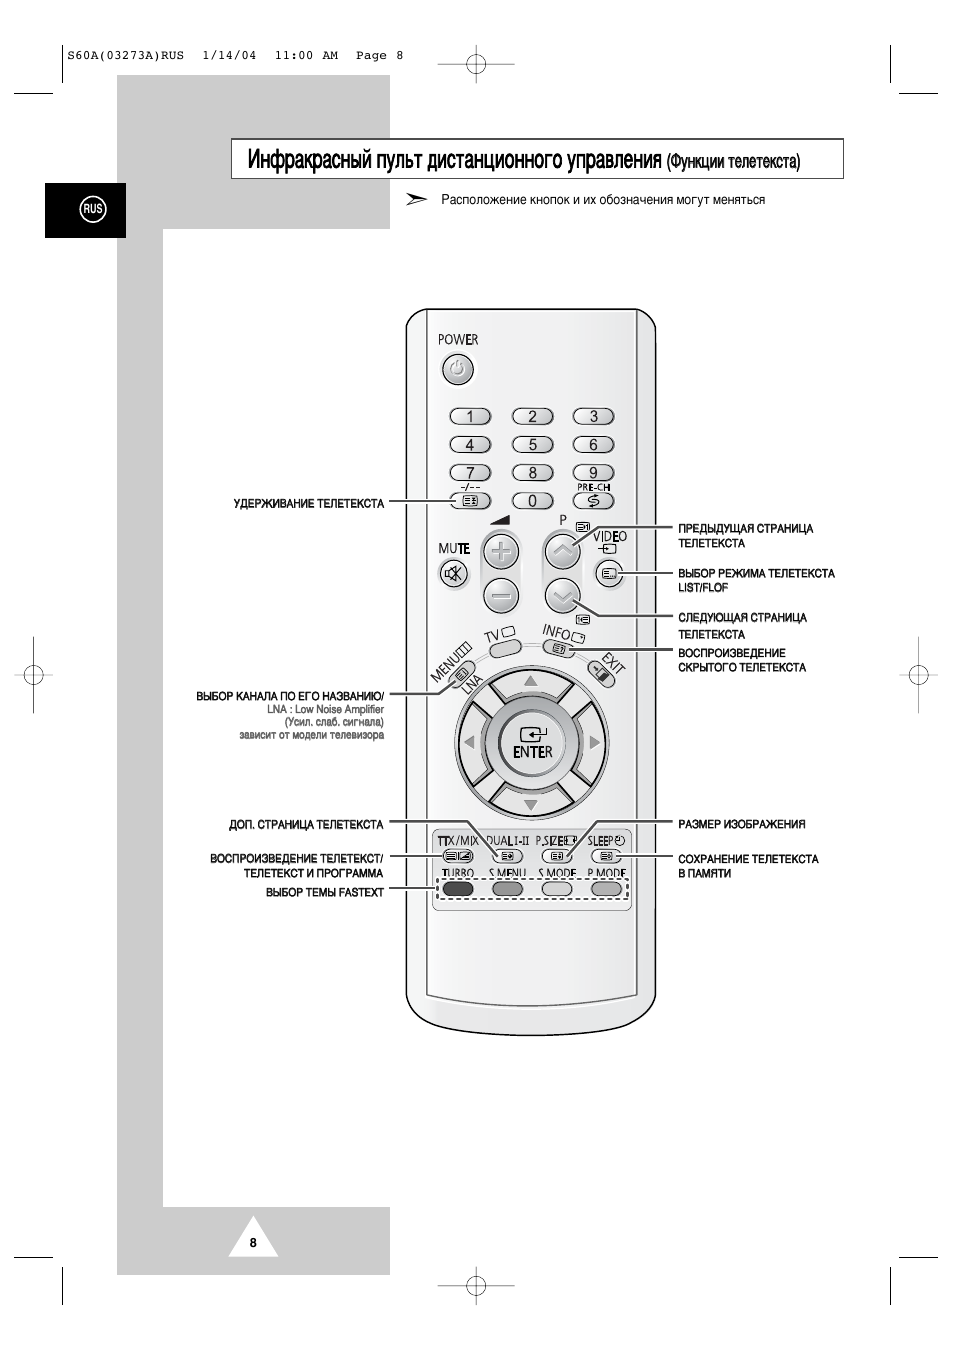 Описание пульт для телевизора. CS-21n11mjq пульт. Пульт от телевизора самсунг CS-21n11mjq. Пульт от телевизора самсунг 59 расположение кнопок. Пульт для телевизора Samsung обозначение кнопок.